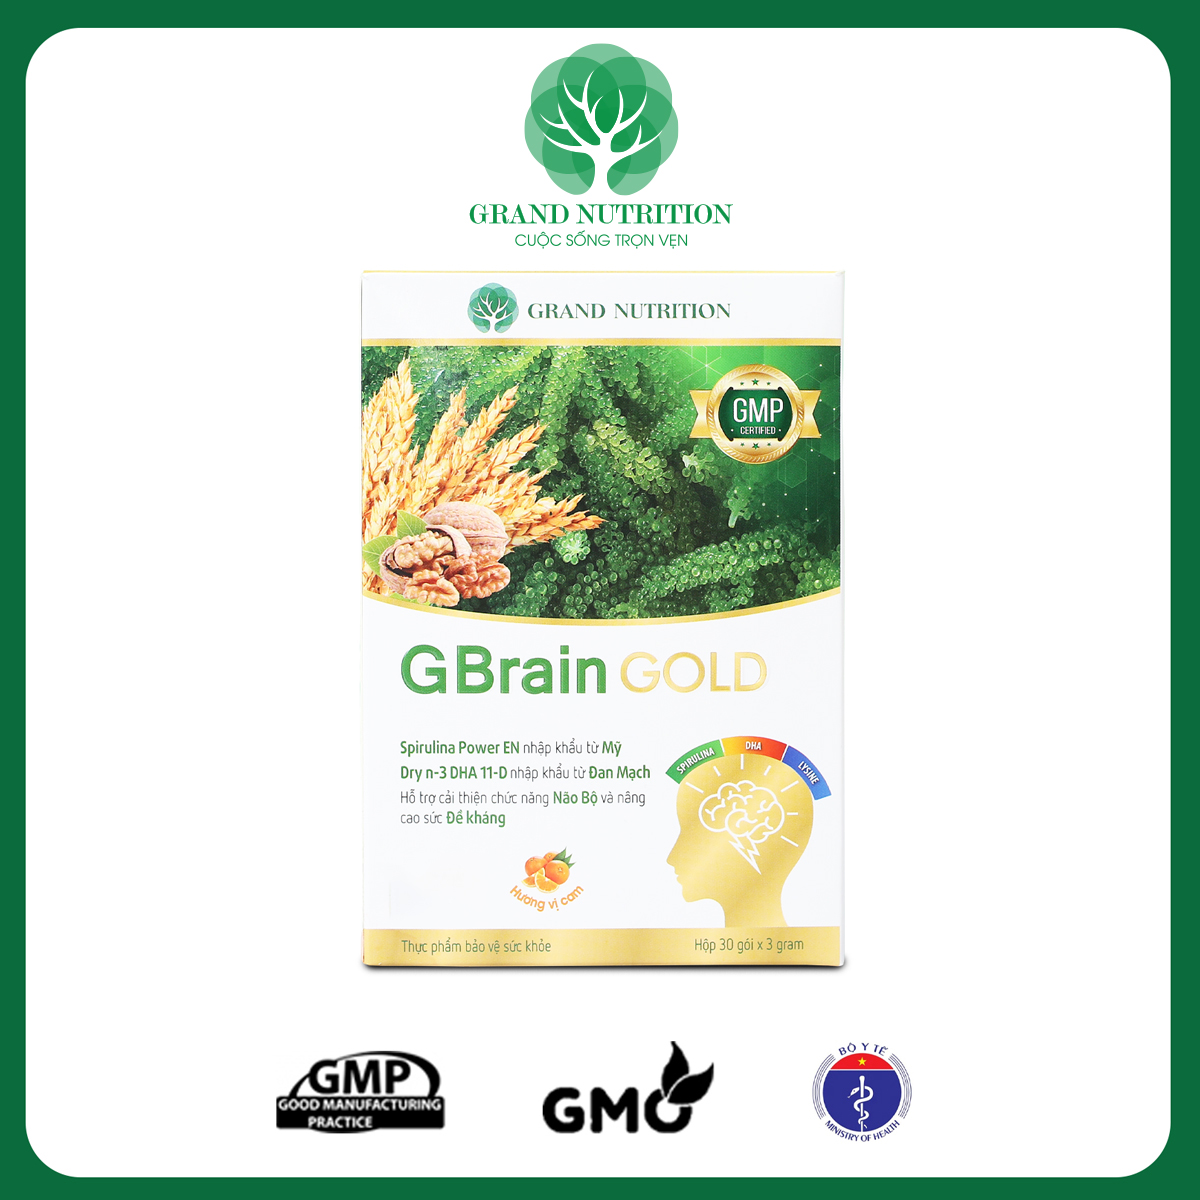 Các dòng sản phẩm của Grand Nutrition đều đáp ứng đủ 4 tiêu chuẩn